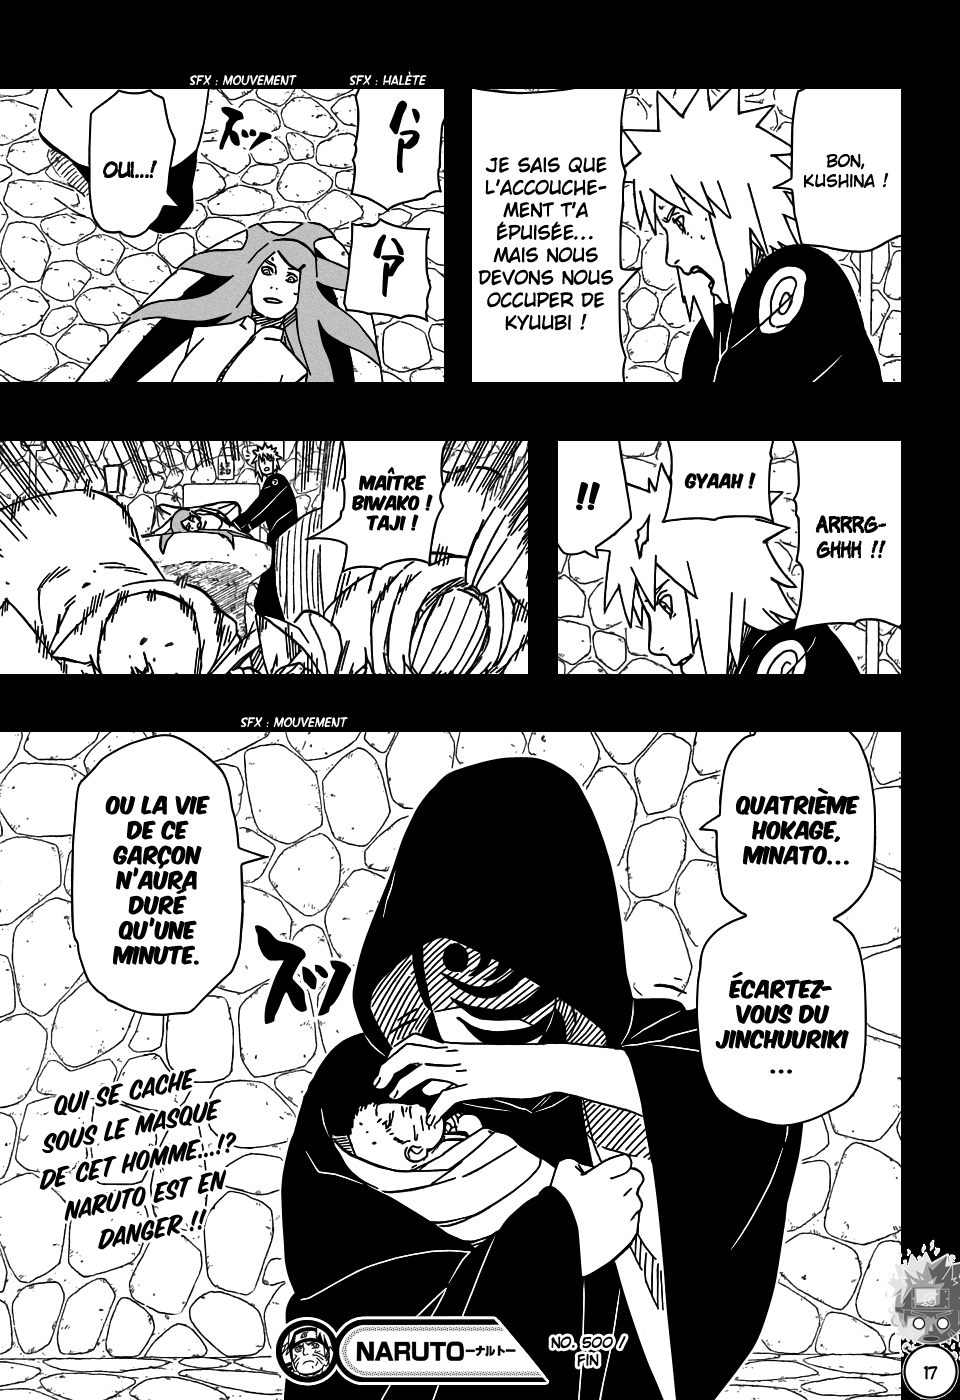 Naruto chapitre 500 - Page 17